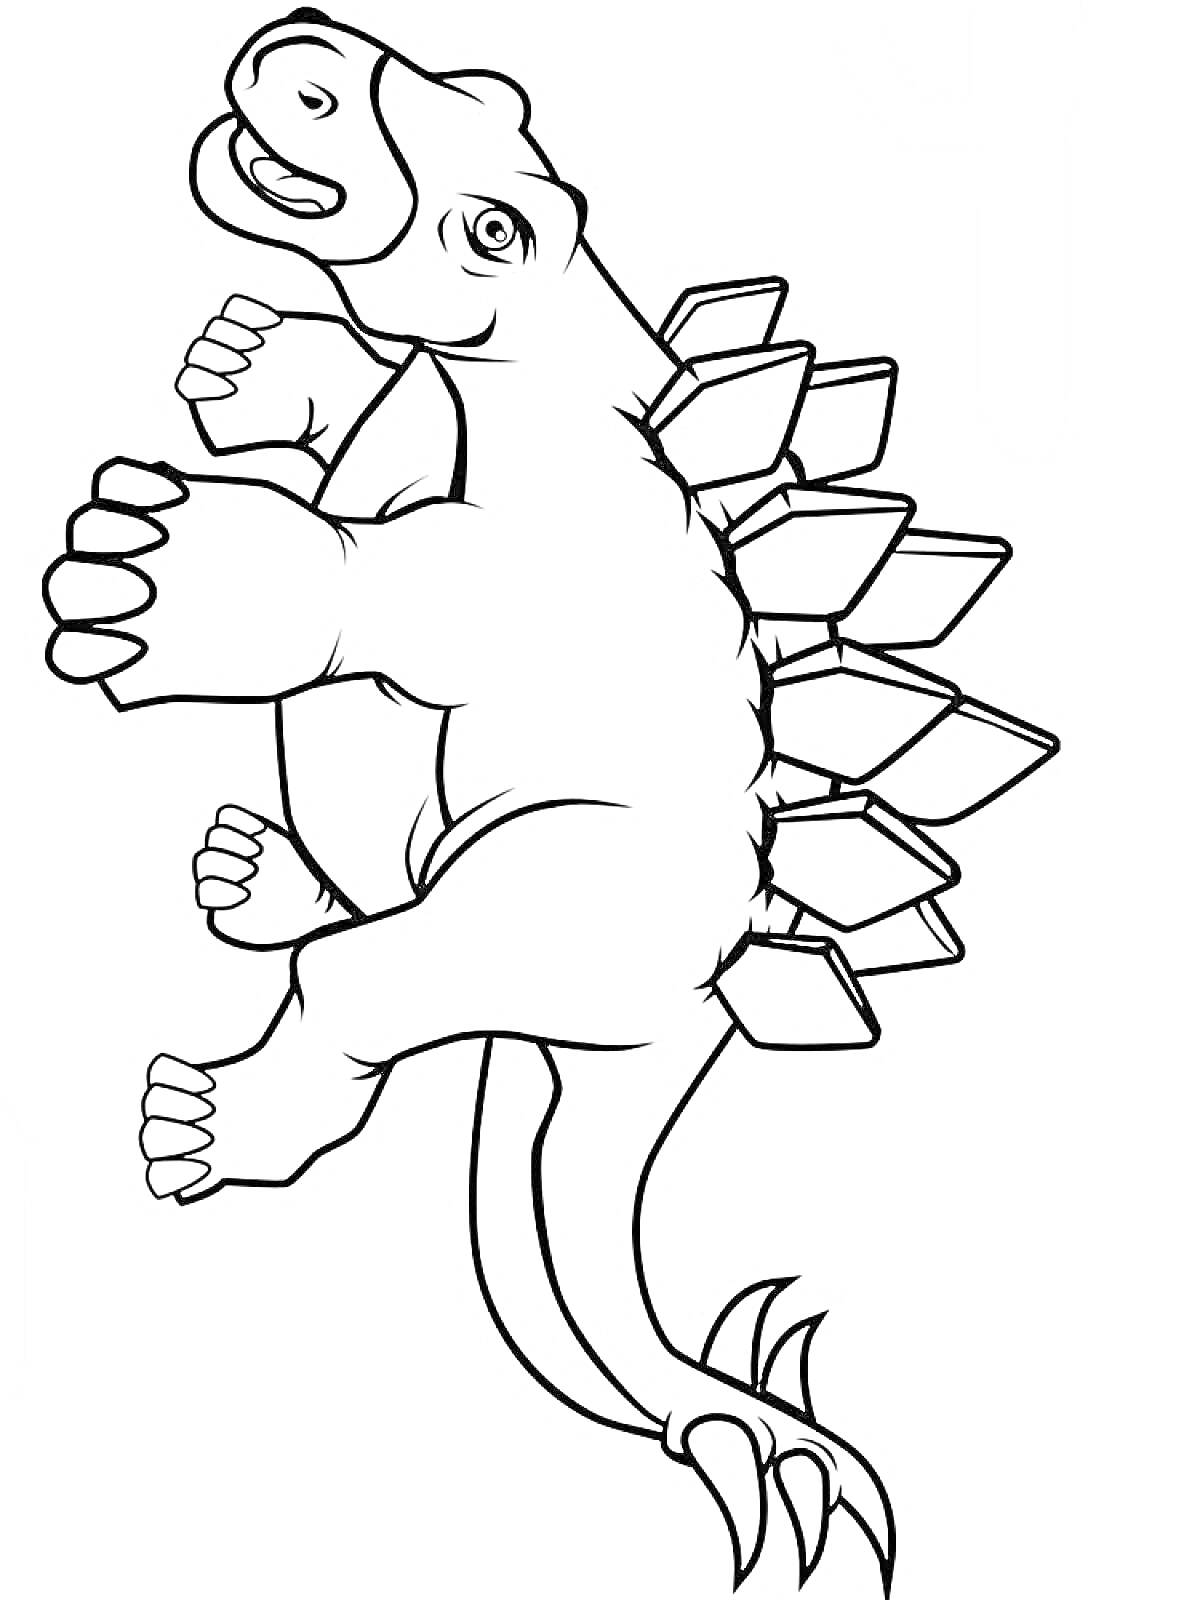 Раскраска Динозавр с пластинами на спине и шипастым хвостом